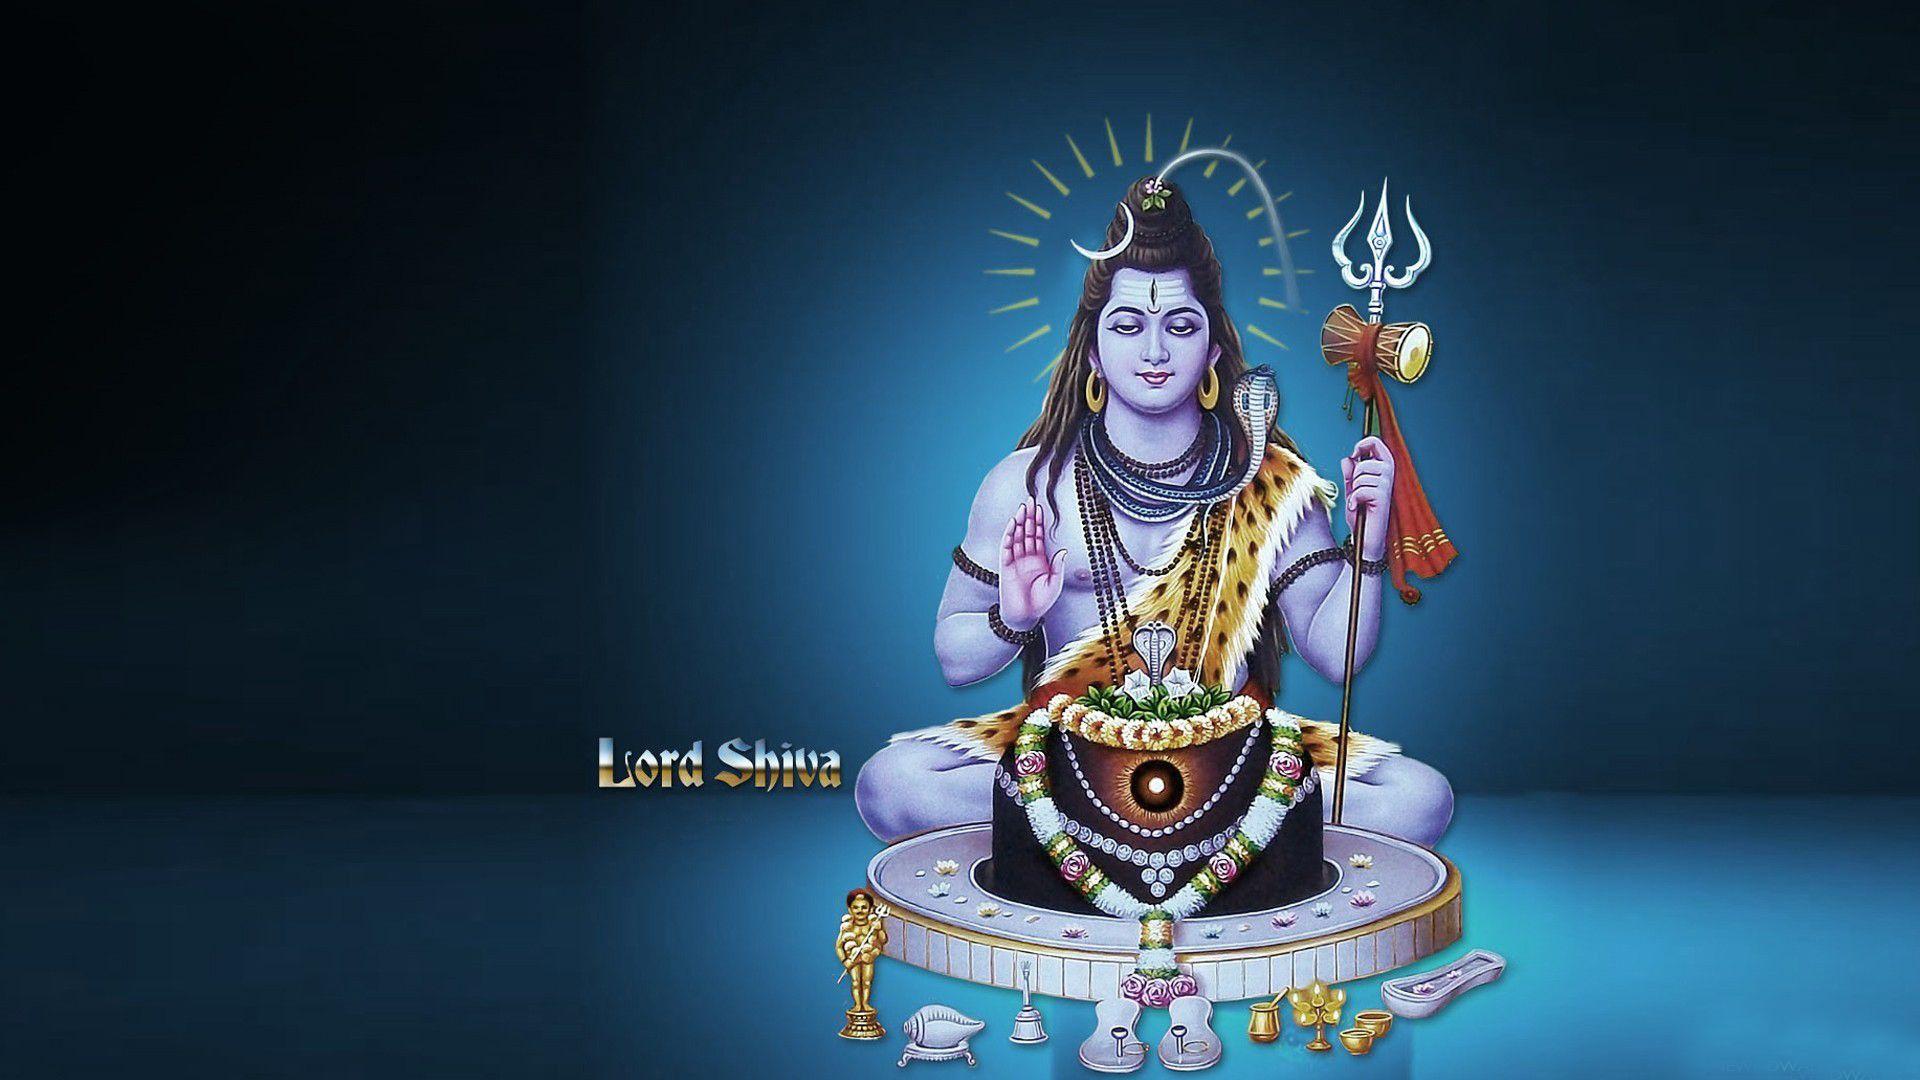 1920x1080 Lord Shiva Wallpaper Tải xuống miễn phí Hình nền Lord Shiva - Shiv Shankar Image Blue Background